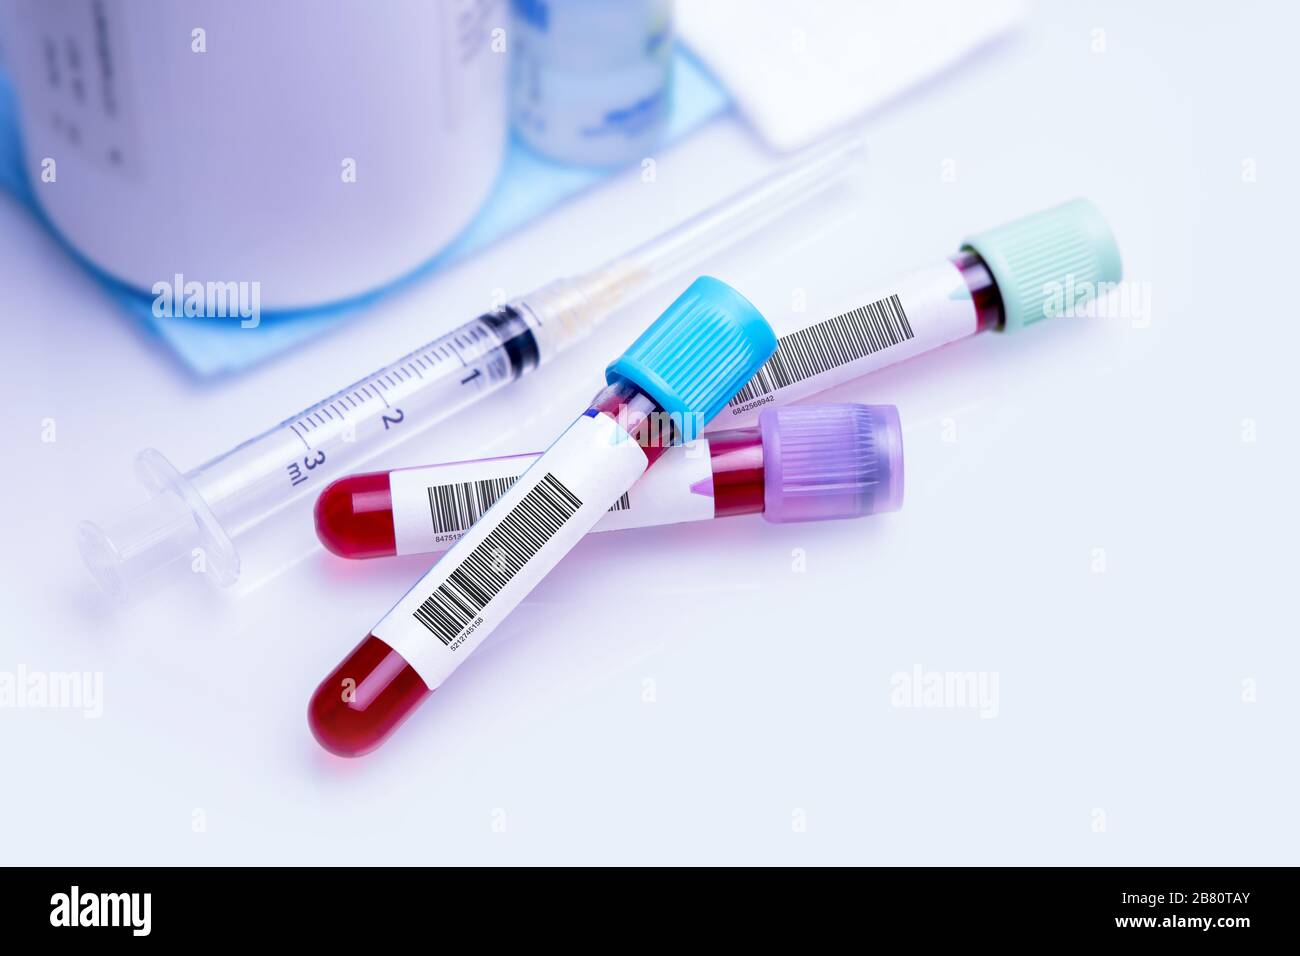 Donación de sangre para la investigación de sustancias inmunitarias contra el coronavirus. Imagen conceptual del día Mundial de los donantes de sangre, junio de 14. Foto de stock